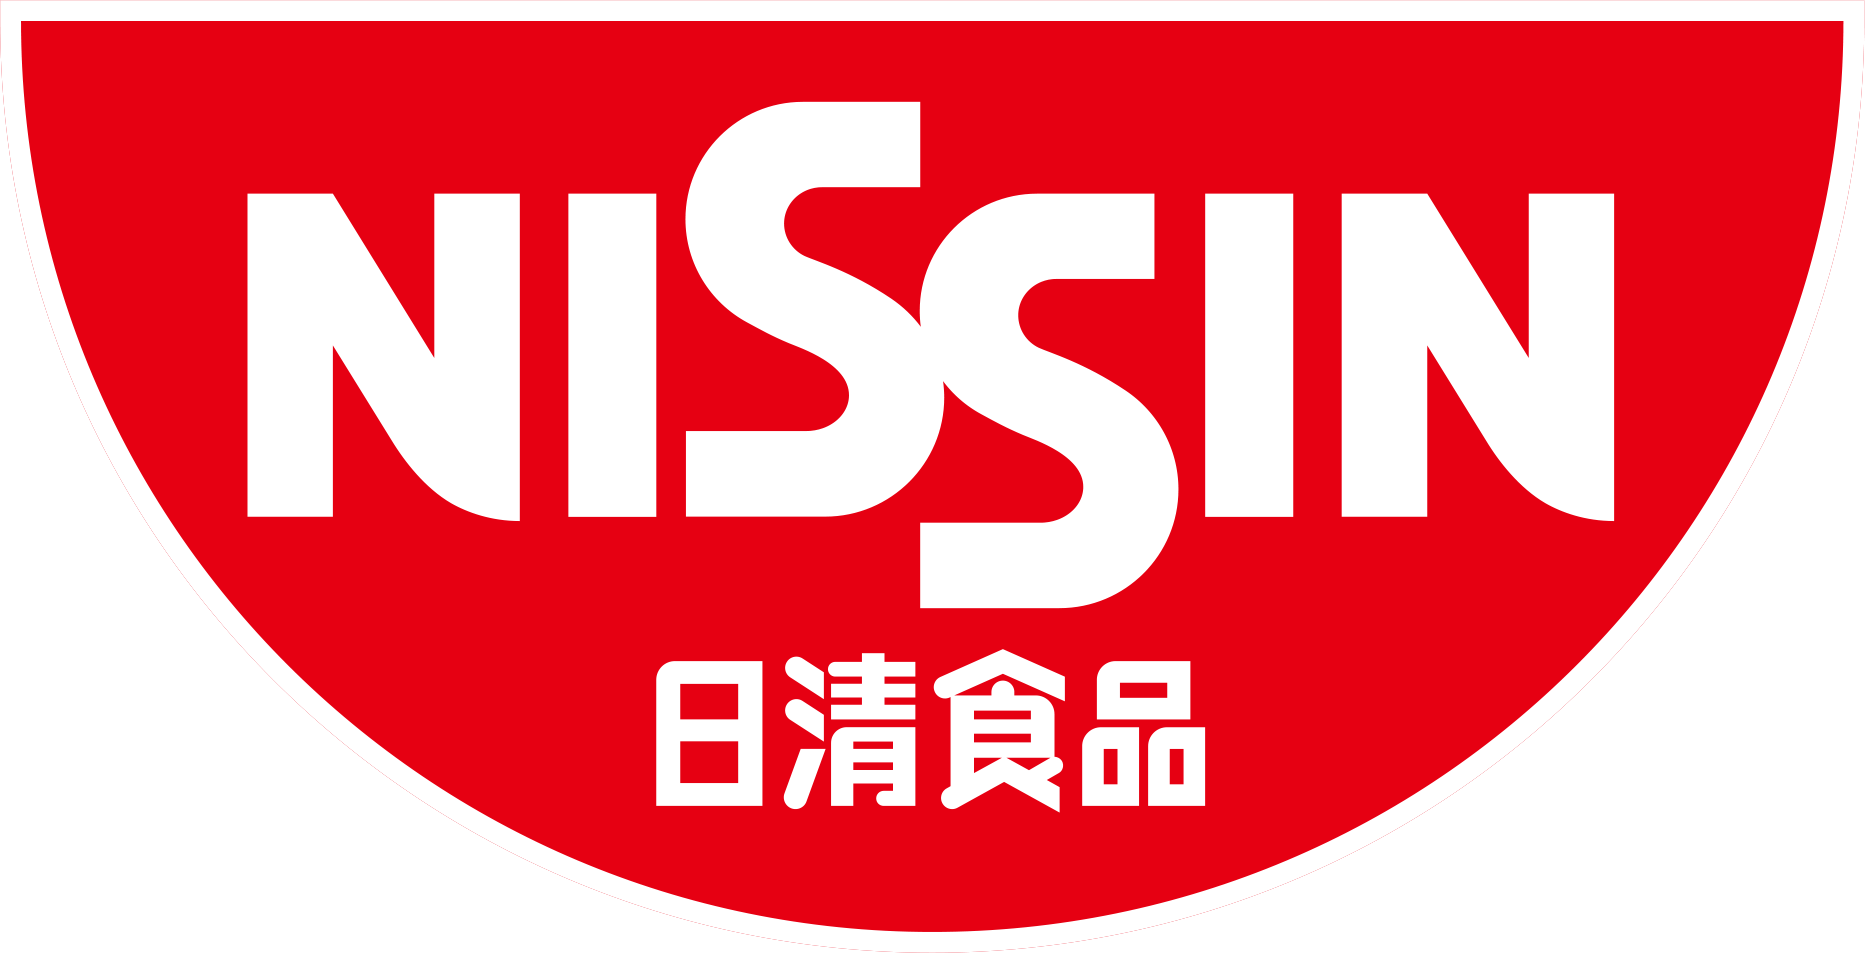 NISSIN_Logo.png